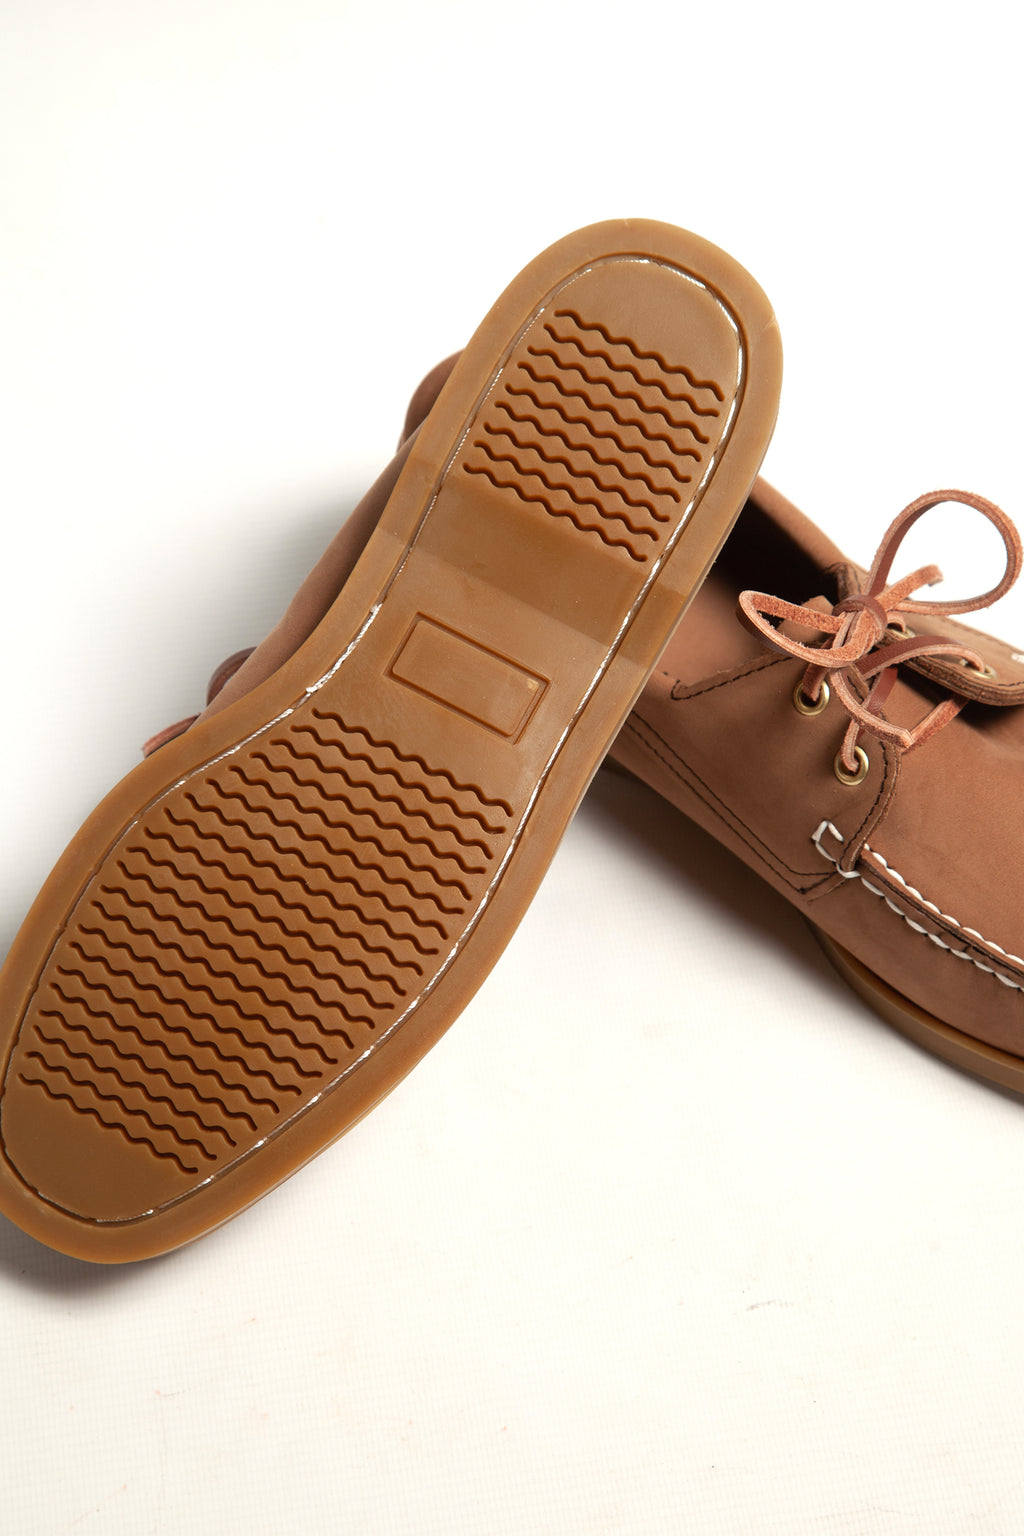 Goodcamp - Deck Loafer Shoes - Hazel